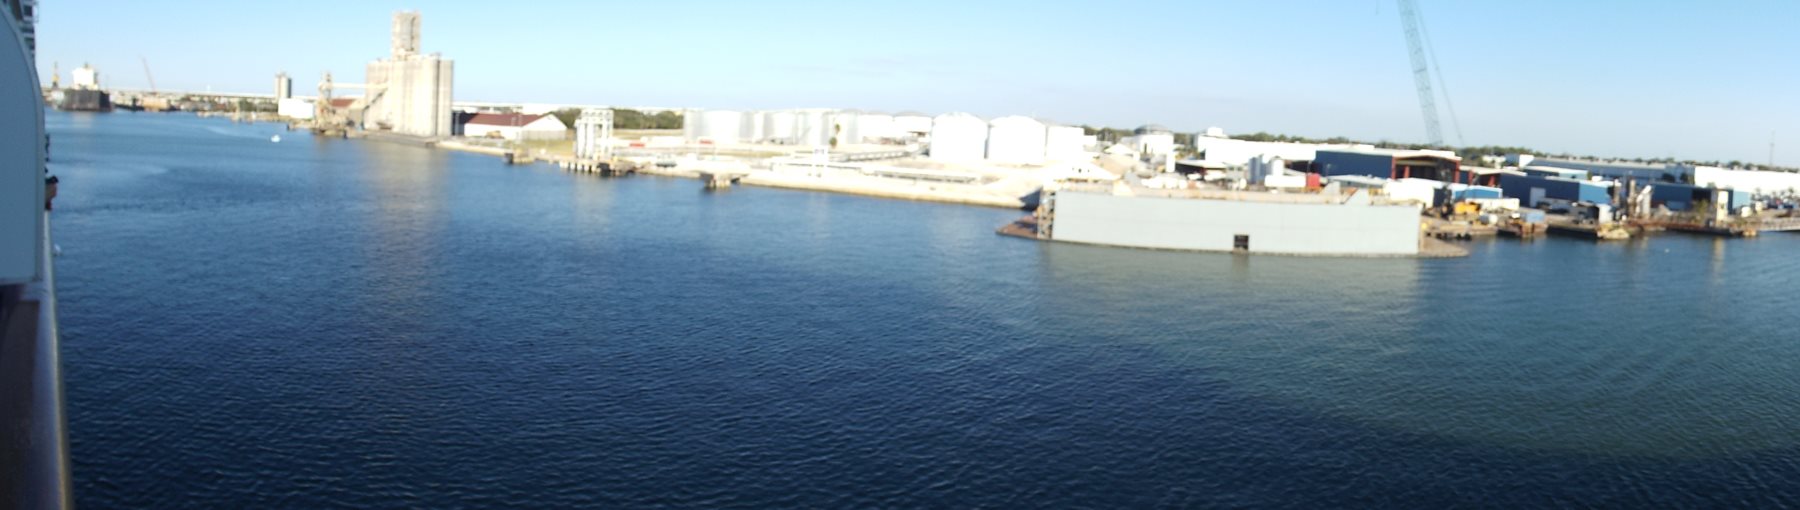 Tampa Port